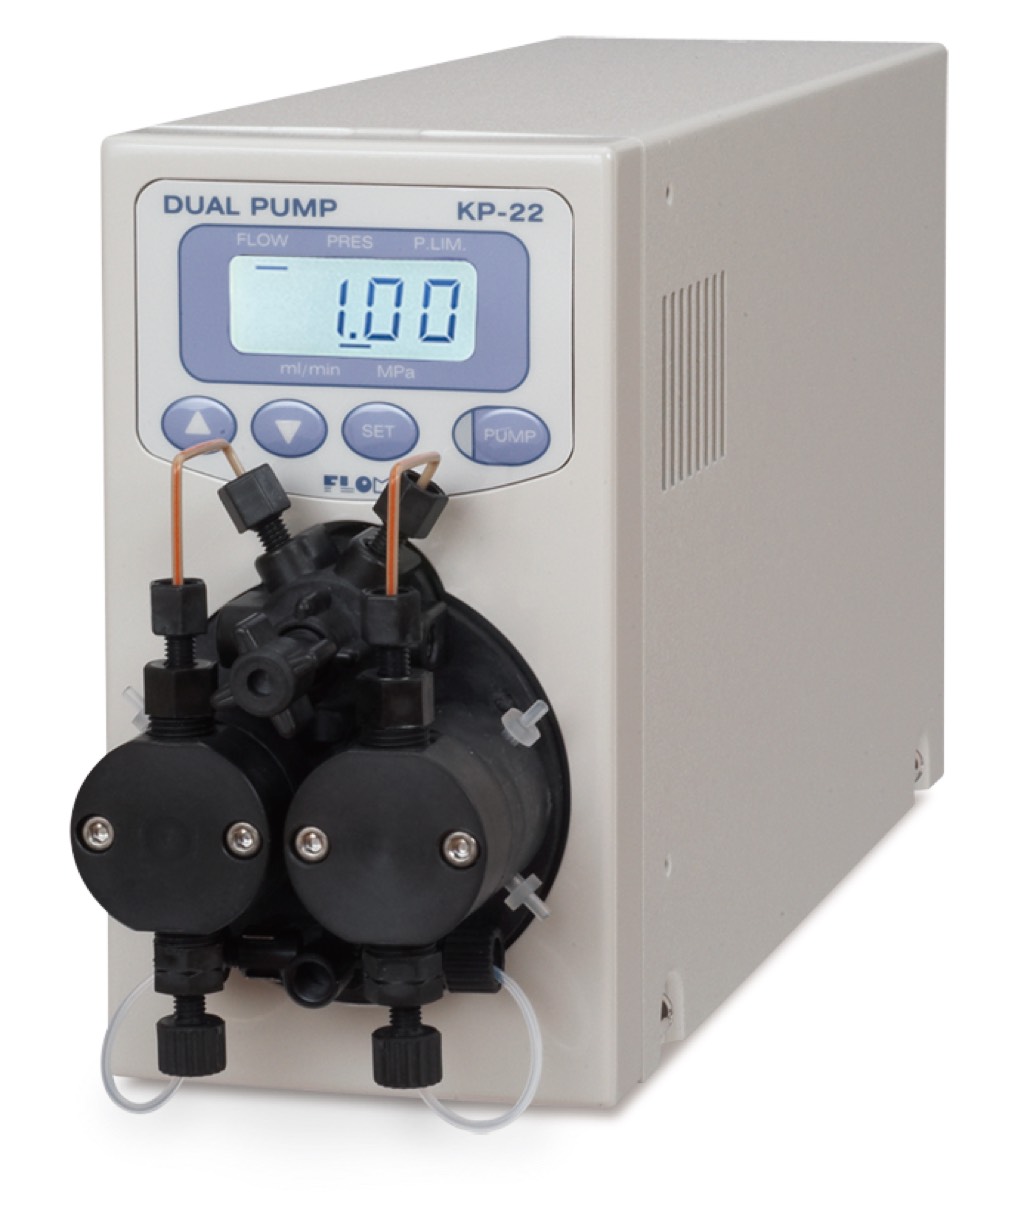 Dual pump (with pressure sensor)